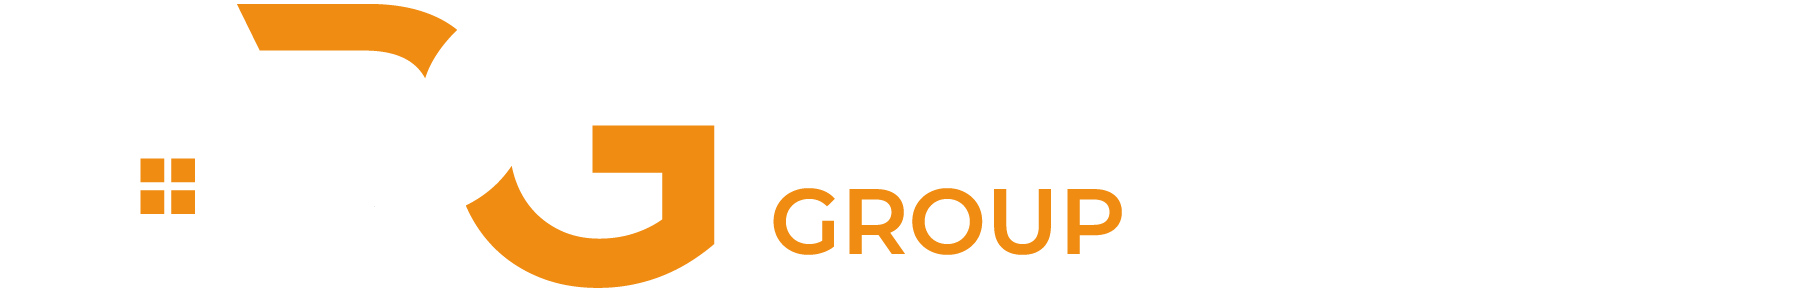 Abode Residential Group | HomeSmart logo